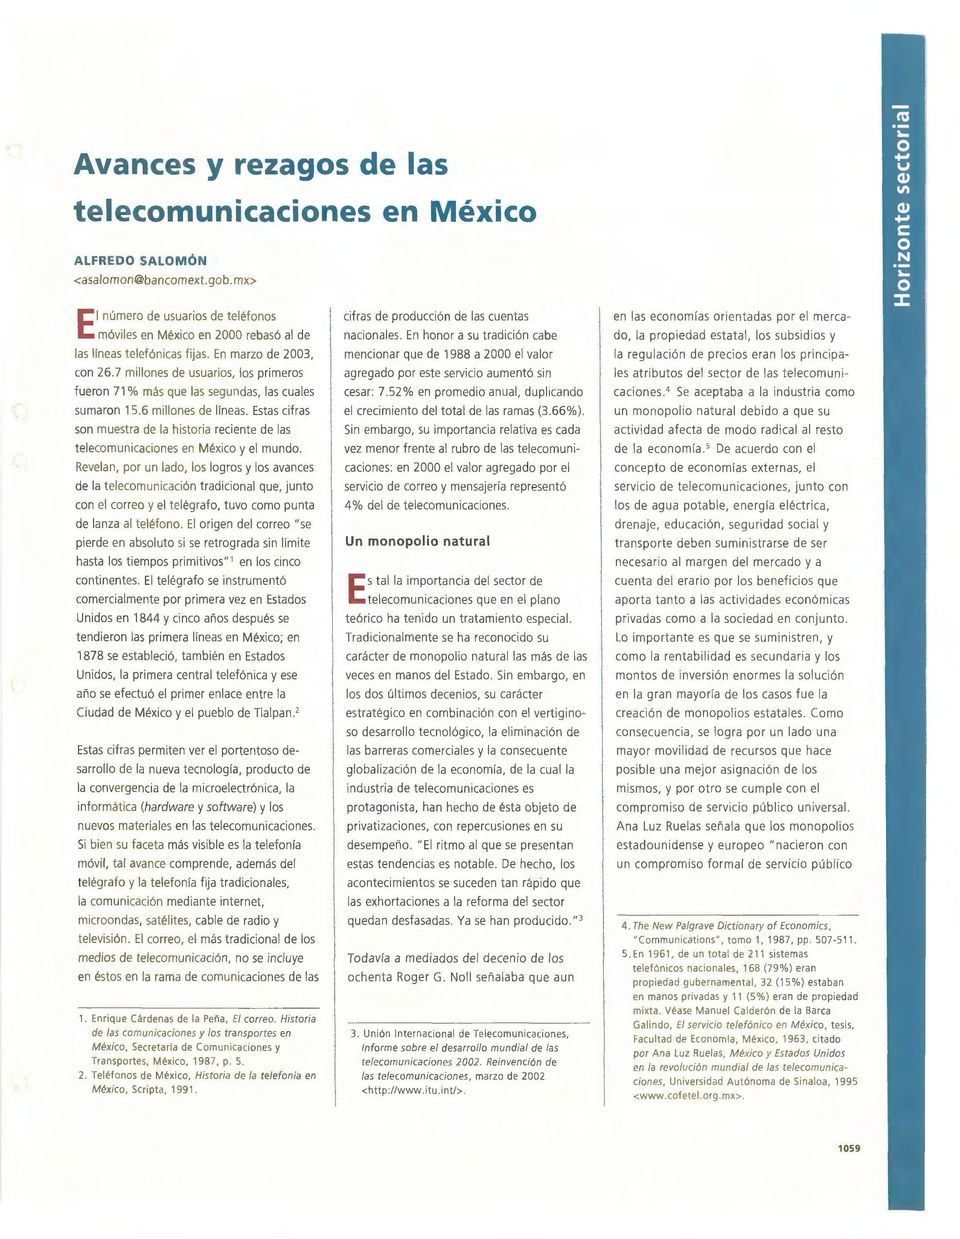 Estas cifras sn muestra de la histria reciente de las telecmun icacines en Méxic y el mund.